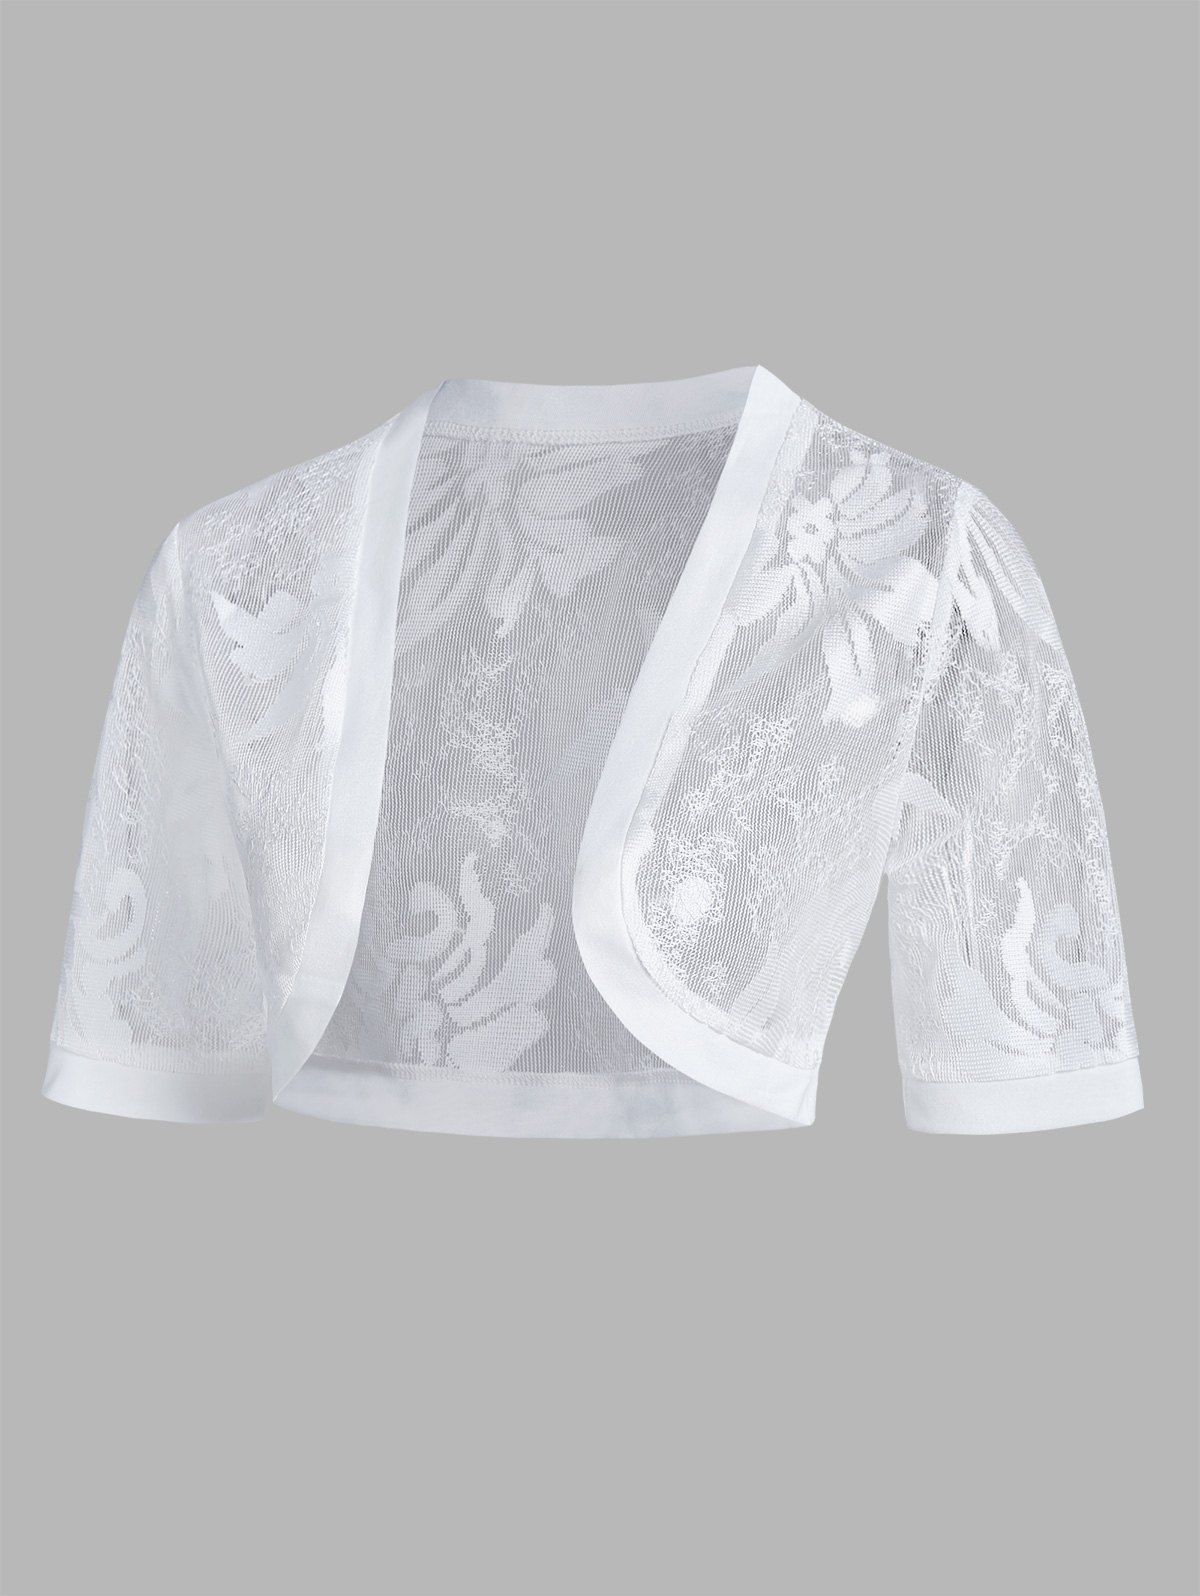 T-shirt d'Eté Kimono Court Floral en Dentelle Transparente à Manches 1 / 2 - Blanc XXL